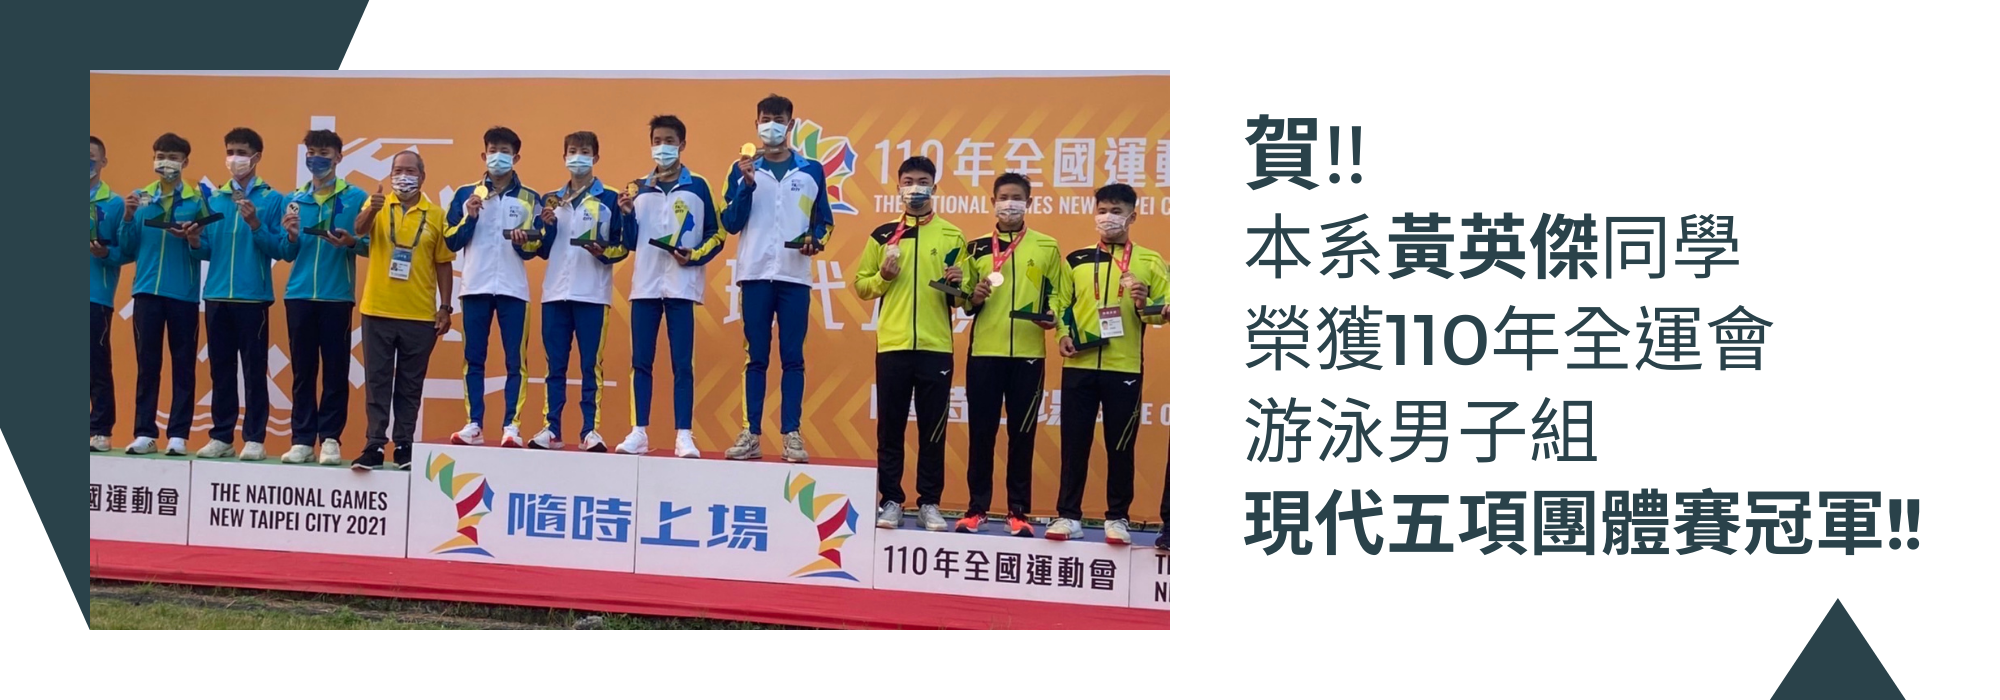 黃英傑同學榮獲110年全運會游泳男子組現代五項團體賽冠軍